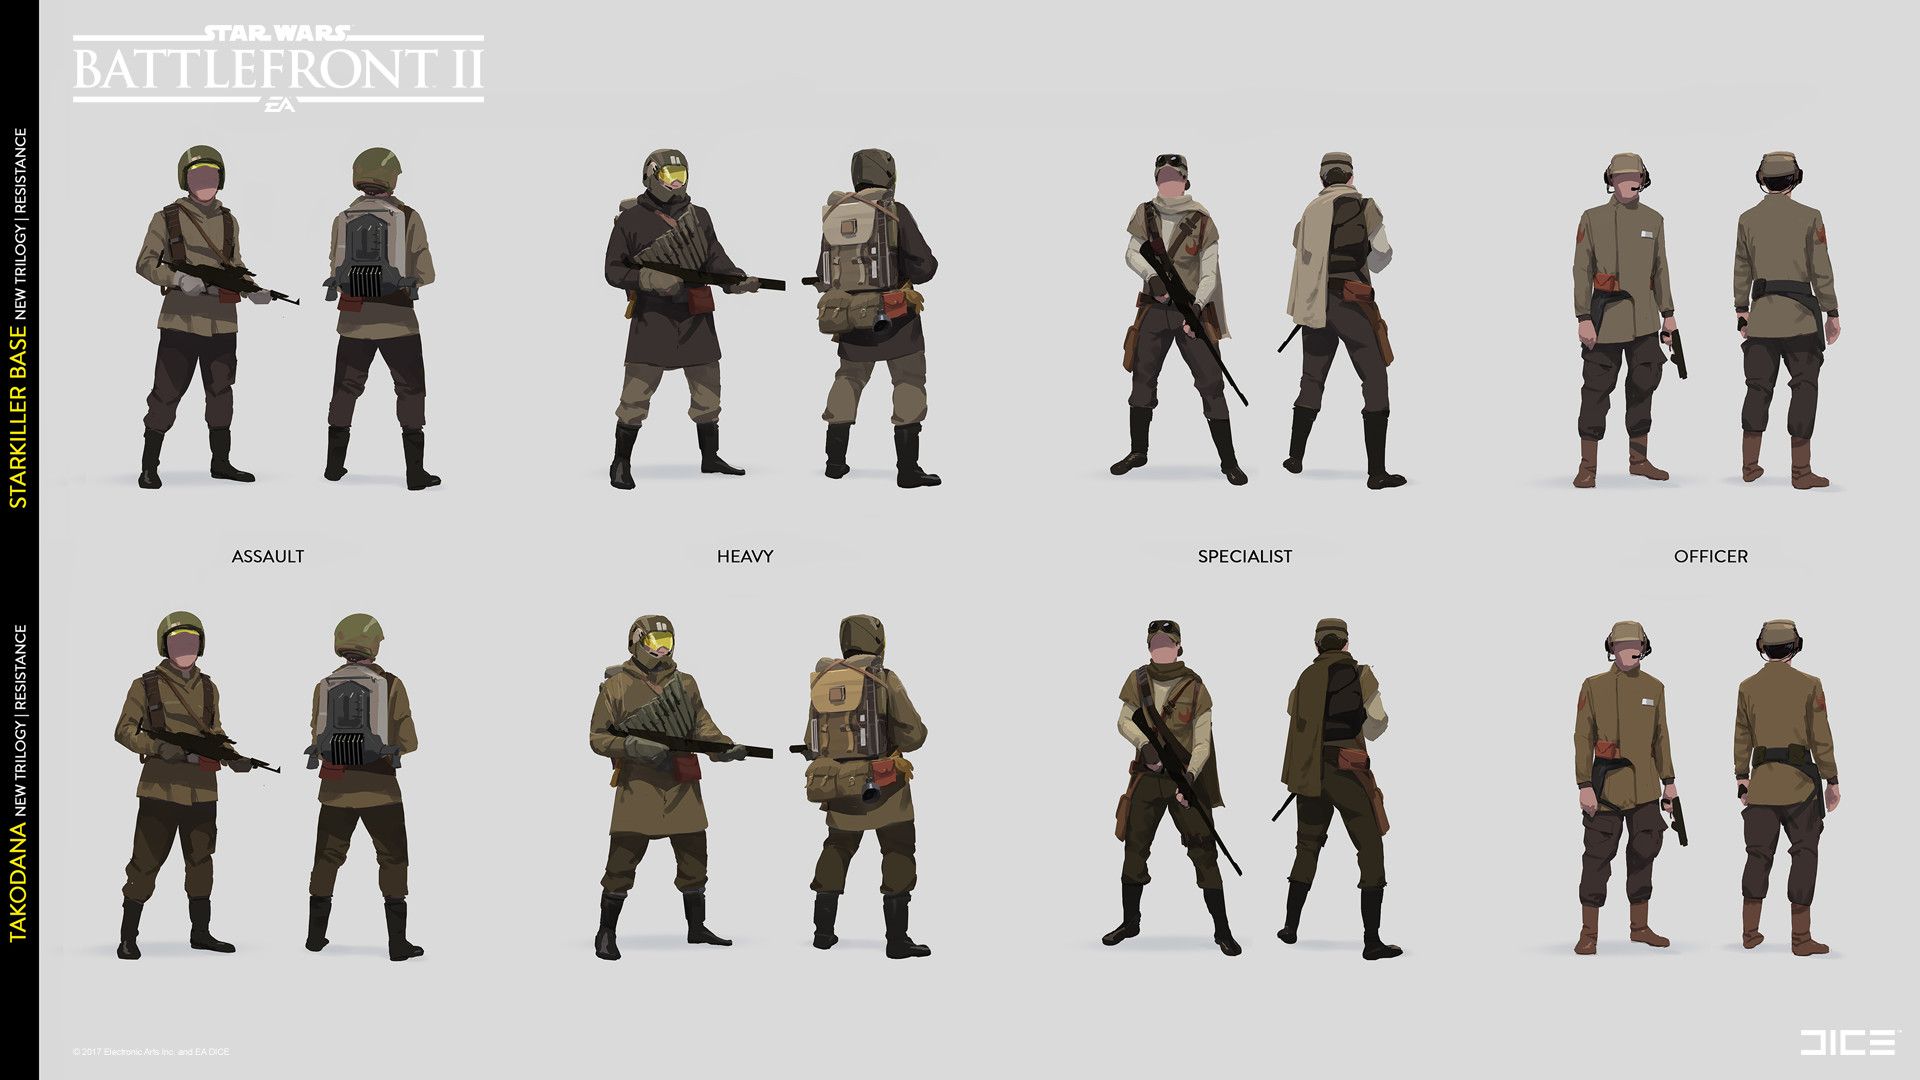 Trooper designs for Star Wars Battlefront II, Sigurd Fernstrom